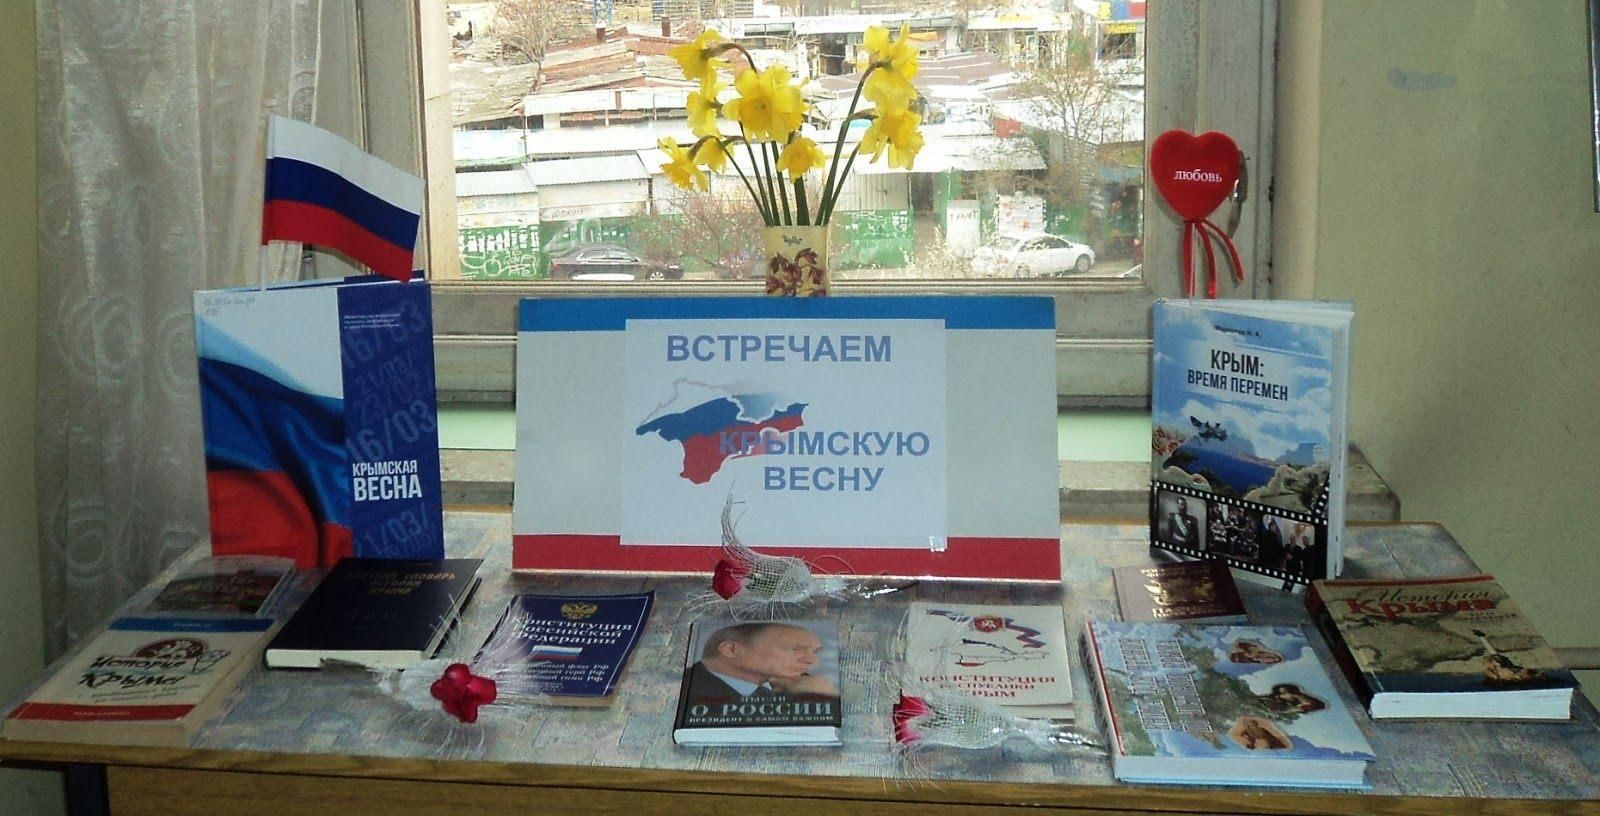 Сценарий воссоединения крыма с россией в библиотеке. Выставка по Крымской весне в библиотеке.